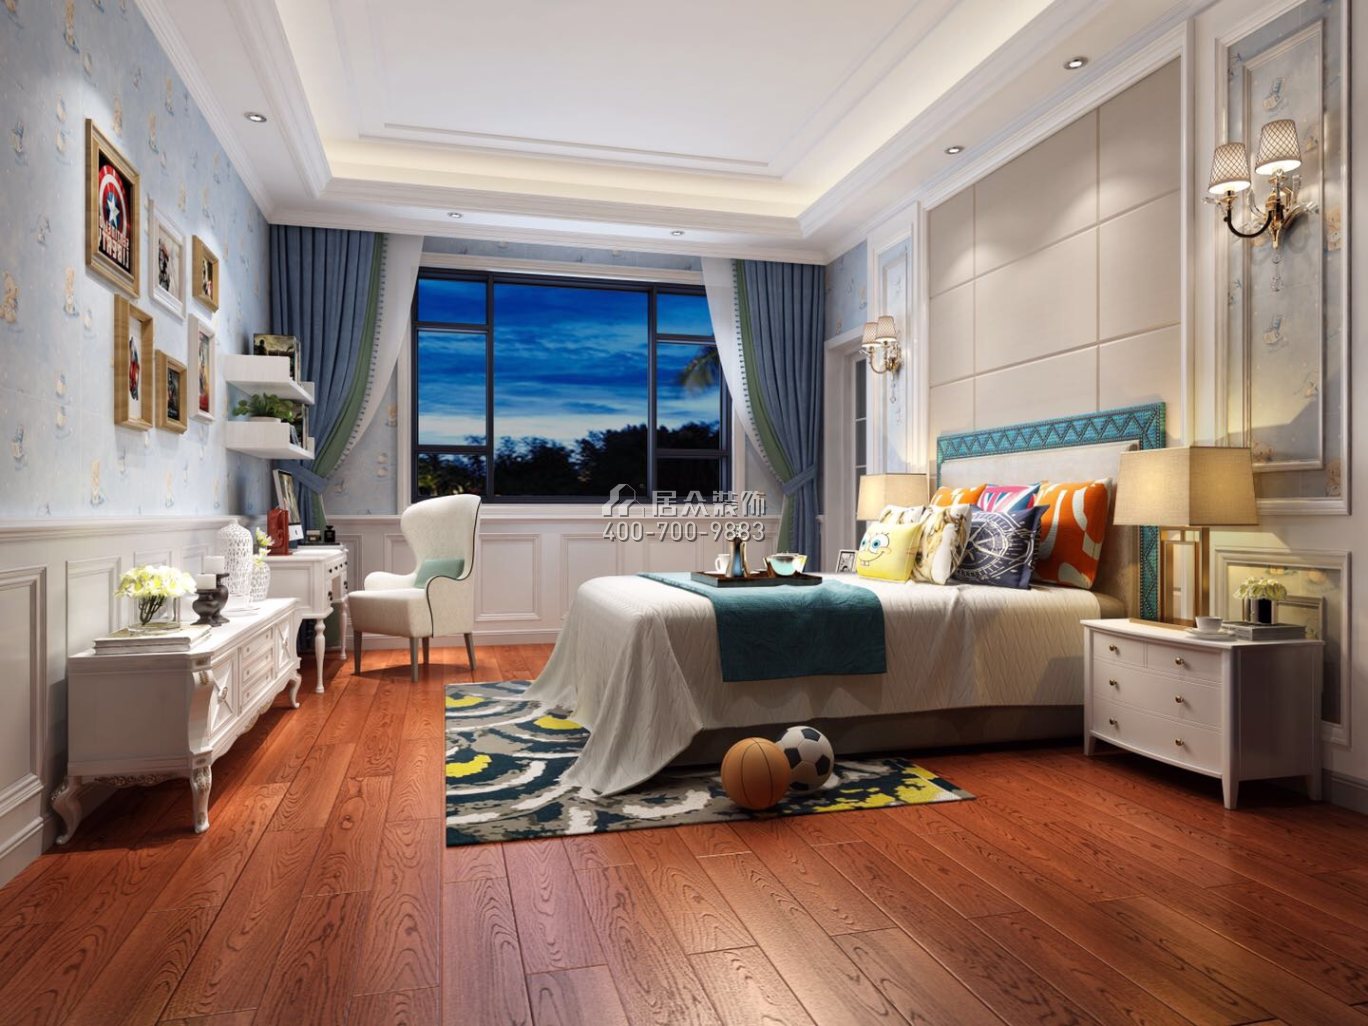 匯景御海藍岸800平方米歐式風格別墅戶型臥室裝修效果圖